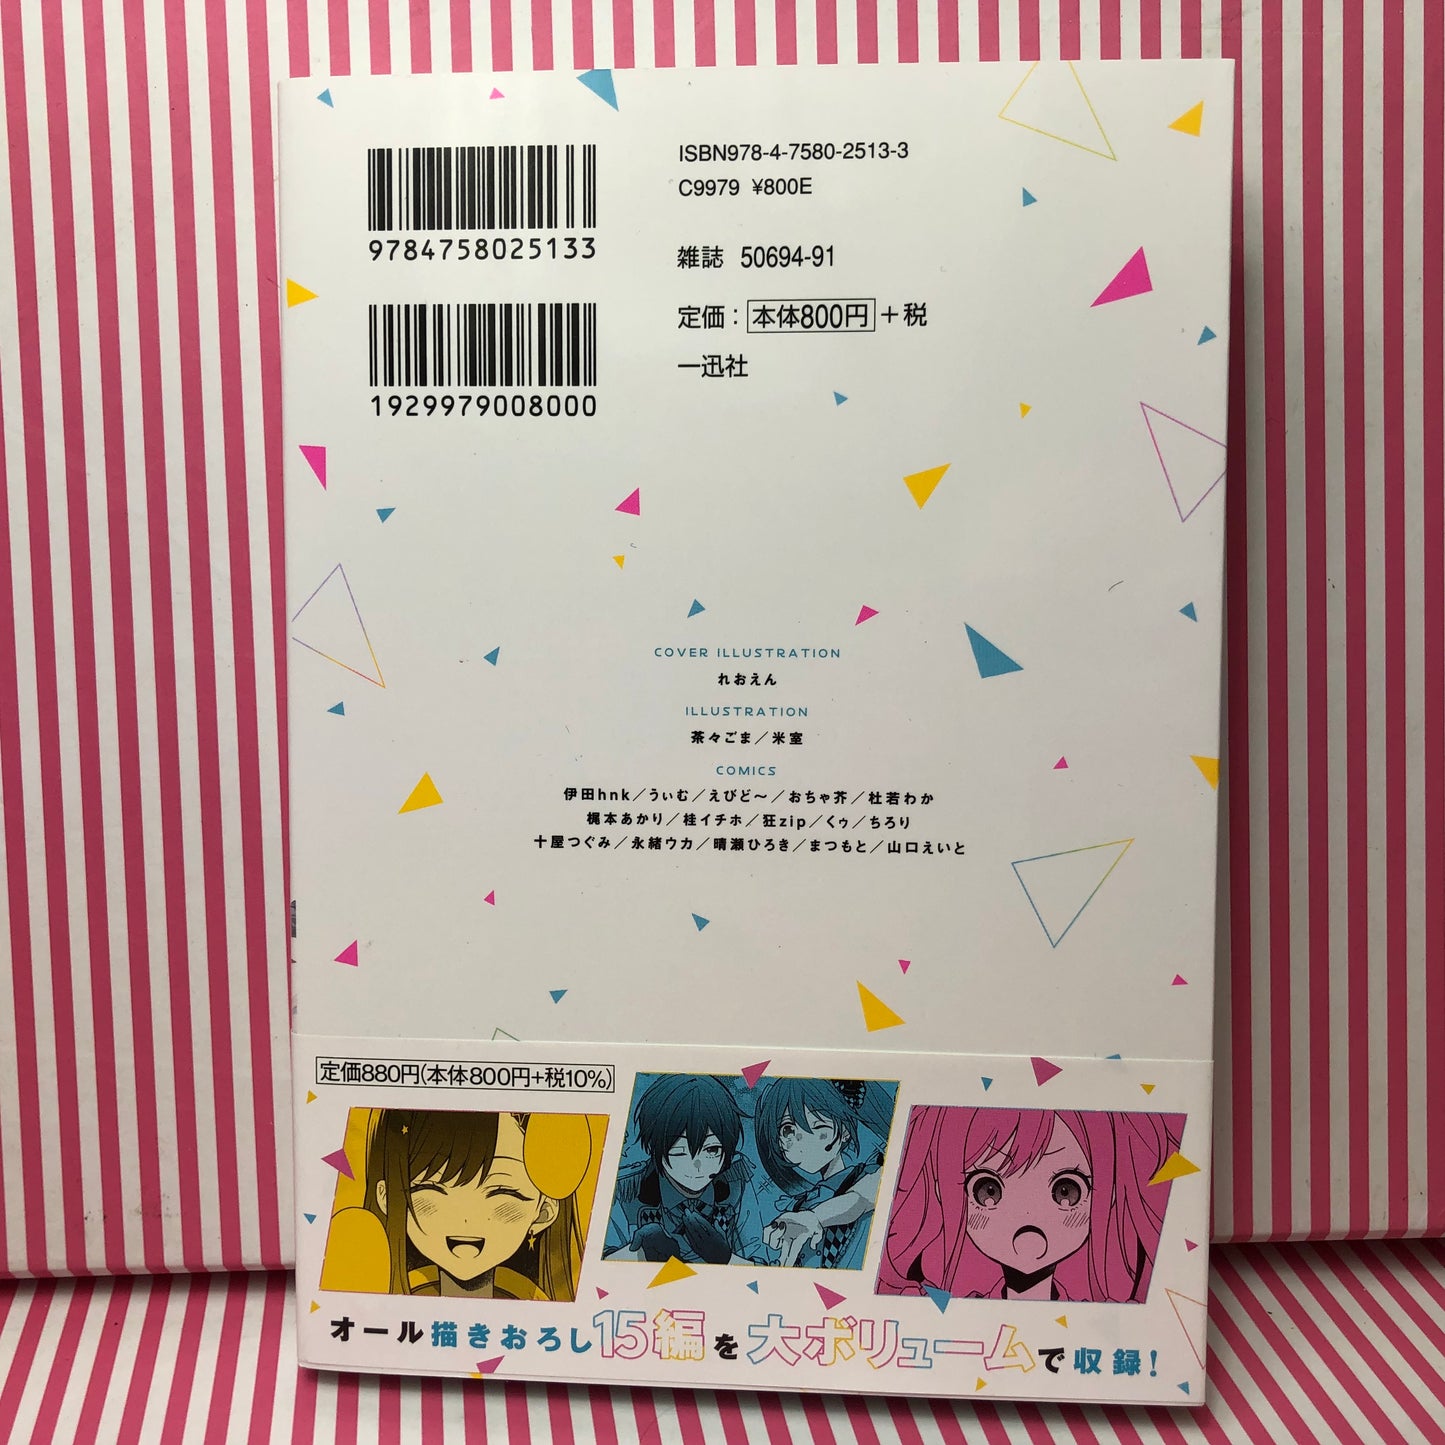 Volume 2 Projet d'anthologie manga Sekai Colorful Stage ! pi. Hatsune Miku Vol.2